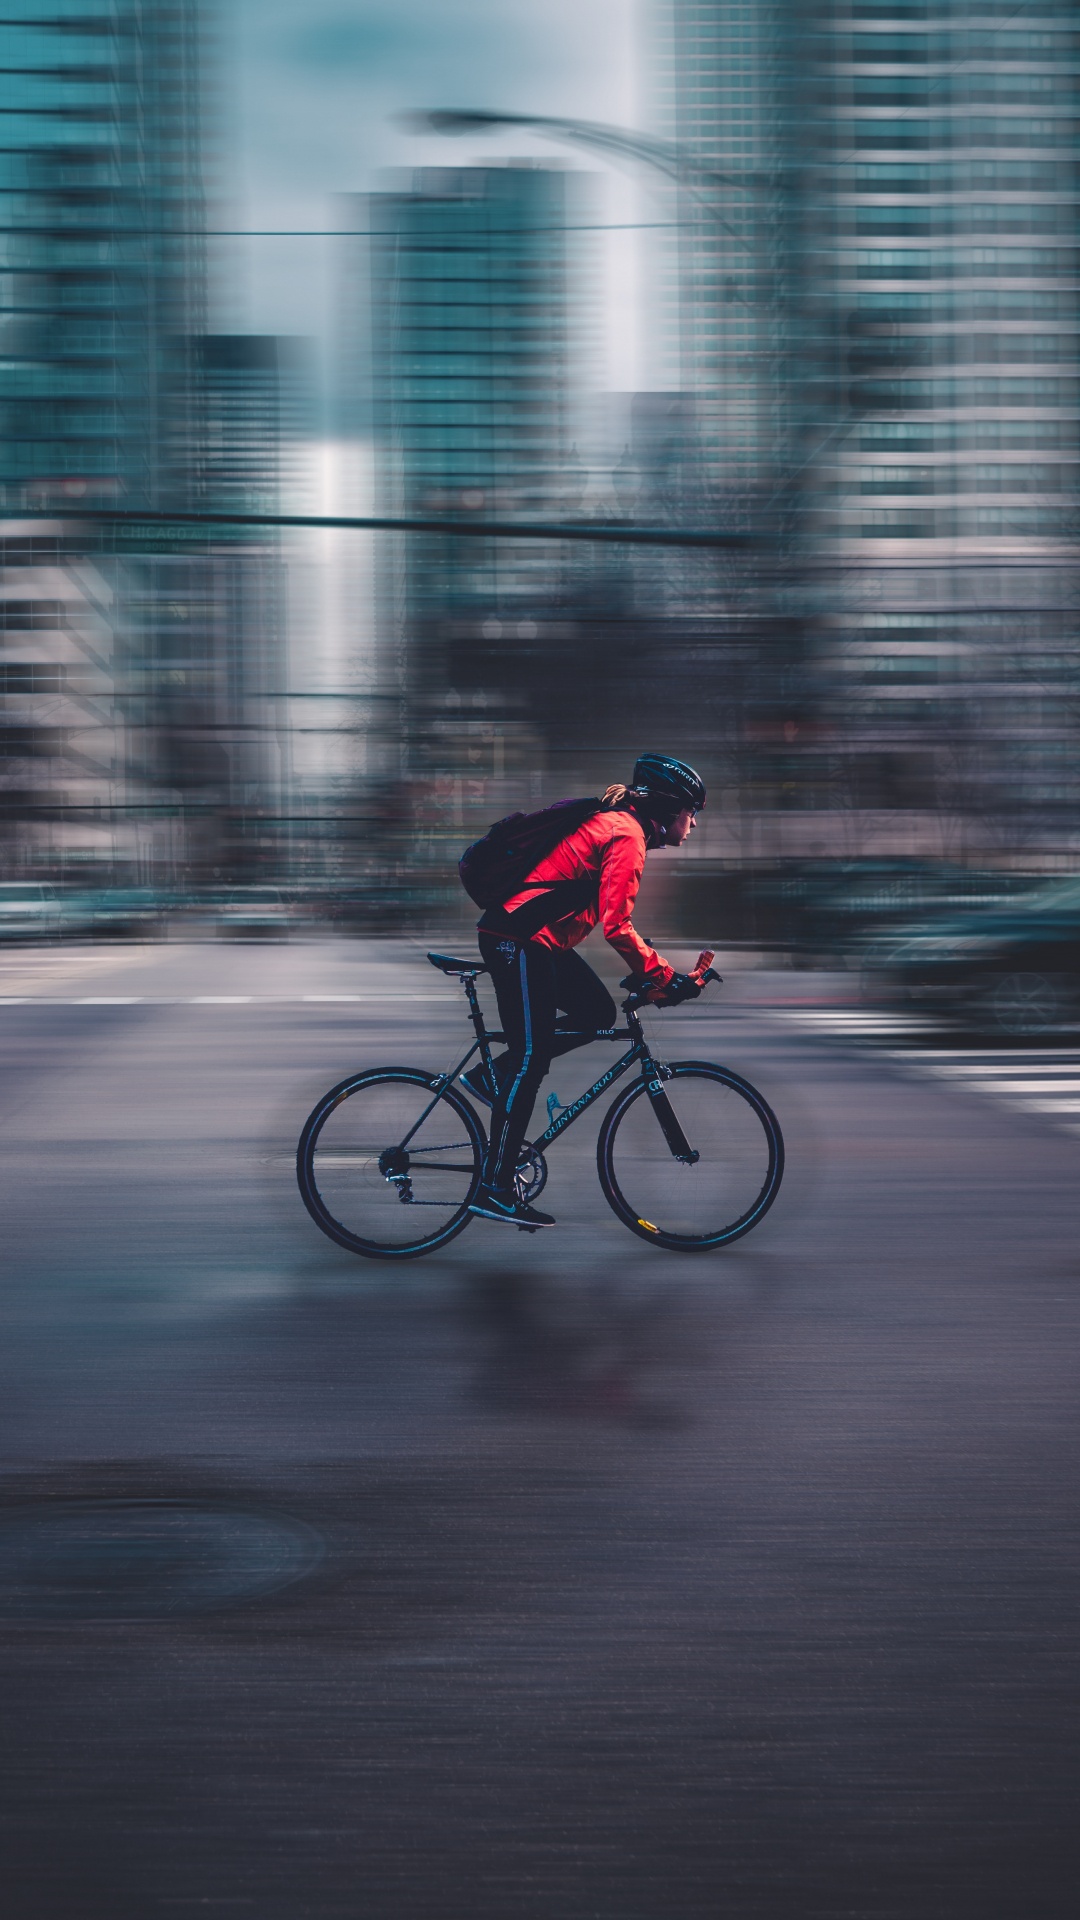 Hombre de Chaqueta Roja Montando Bicicleta en la Carretera Durante el Día. Wallpaper in 1080x1920 Resolution